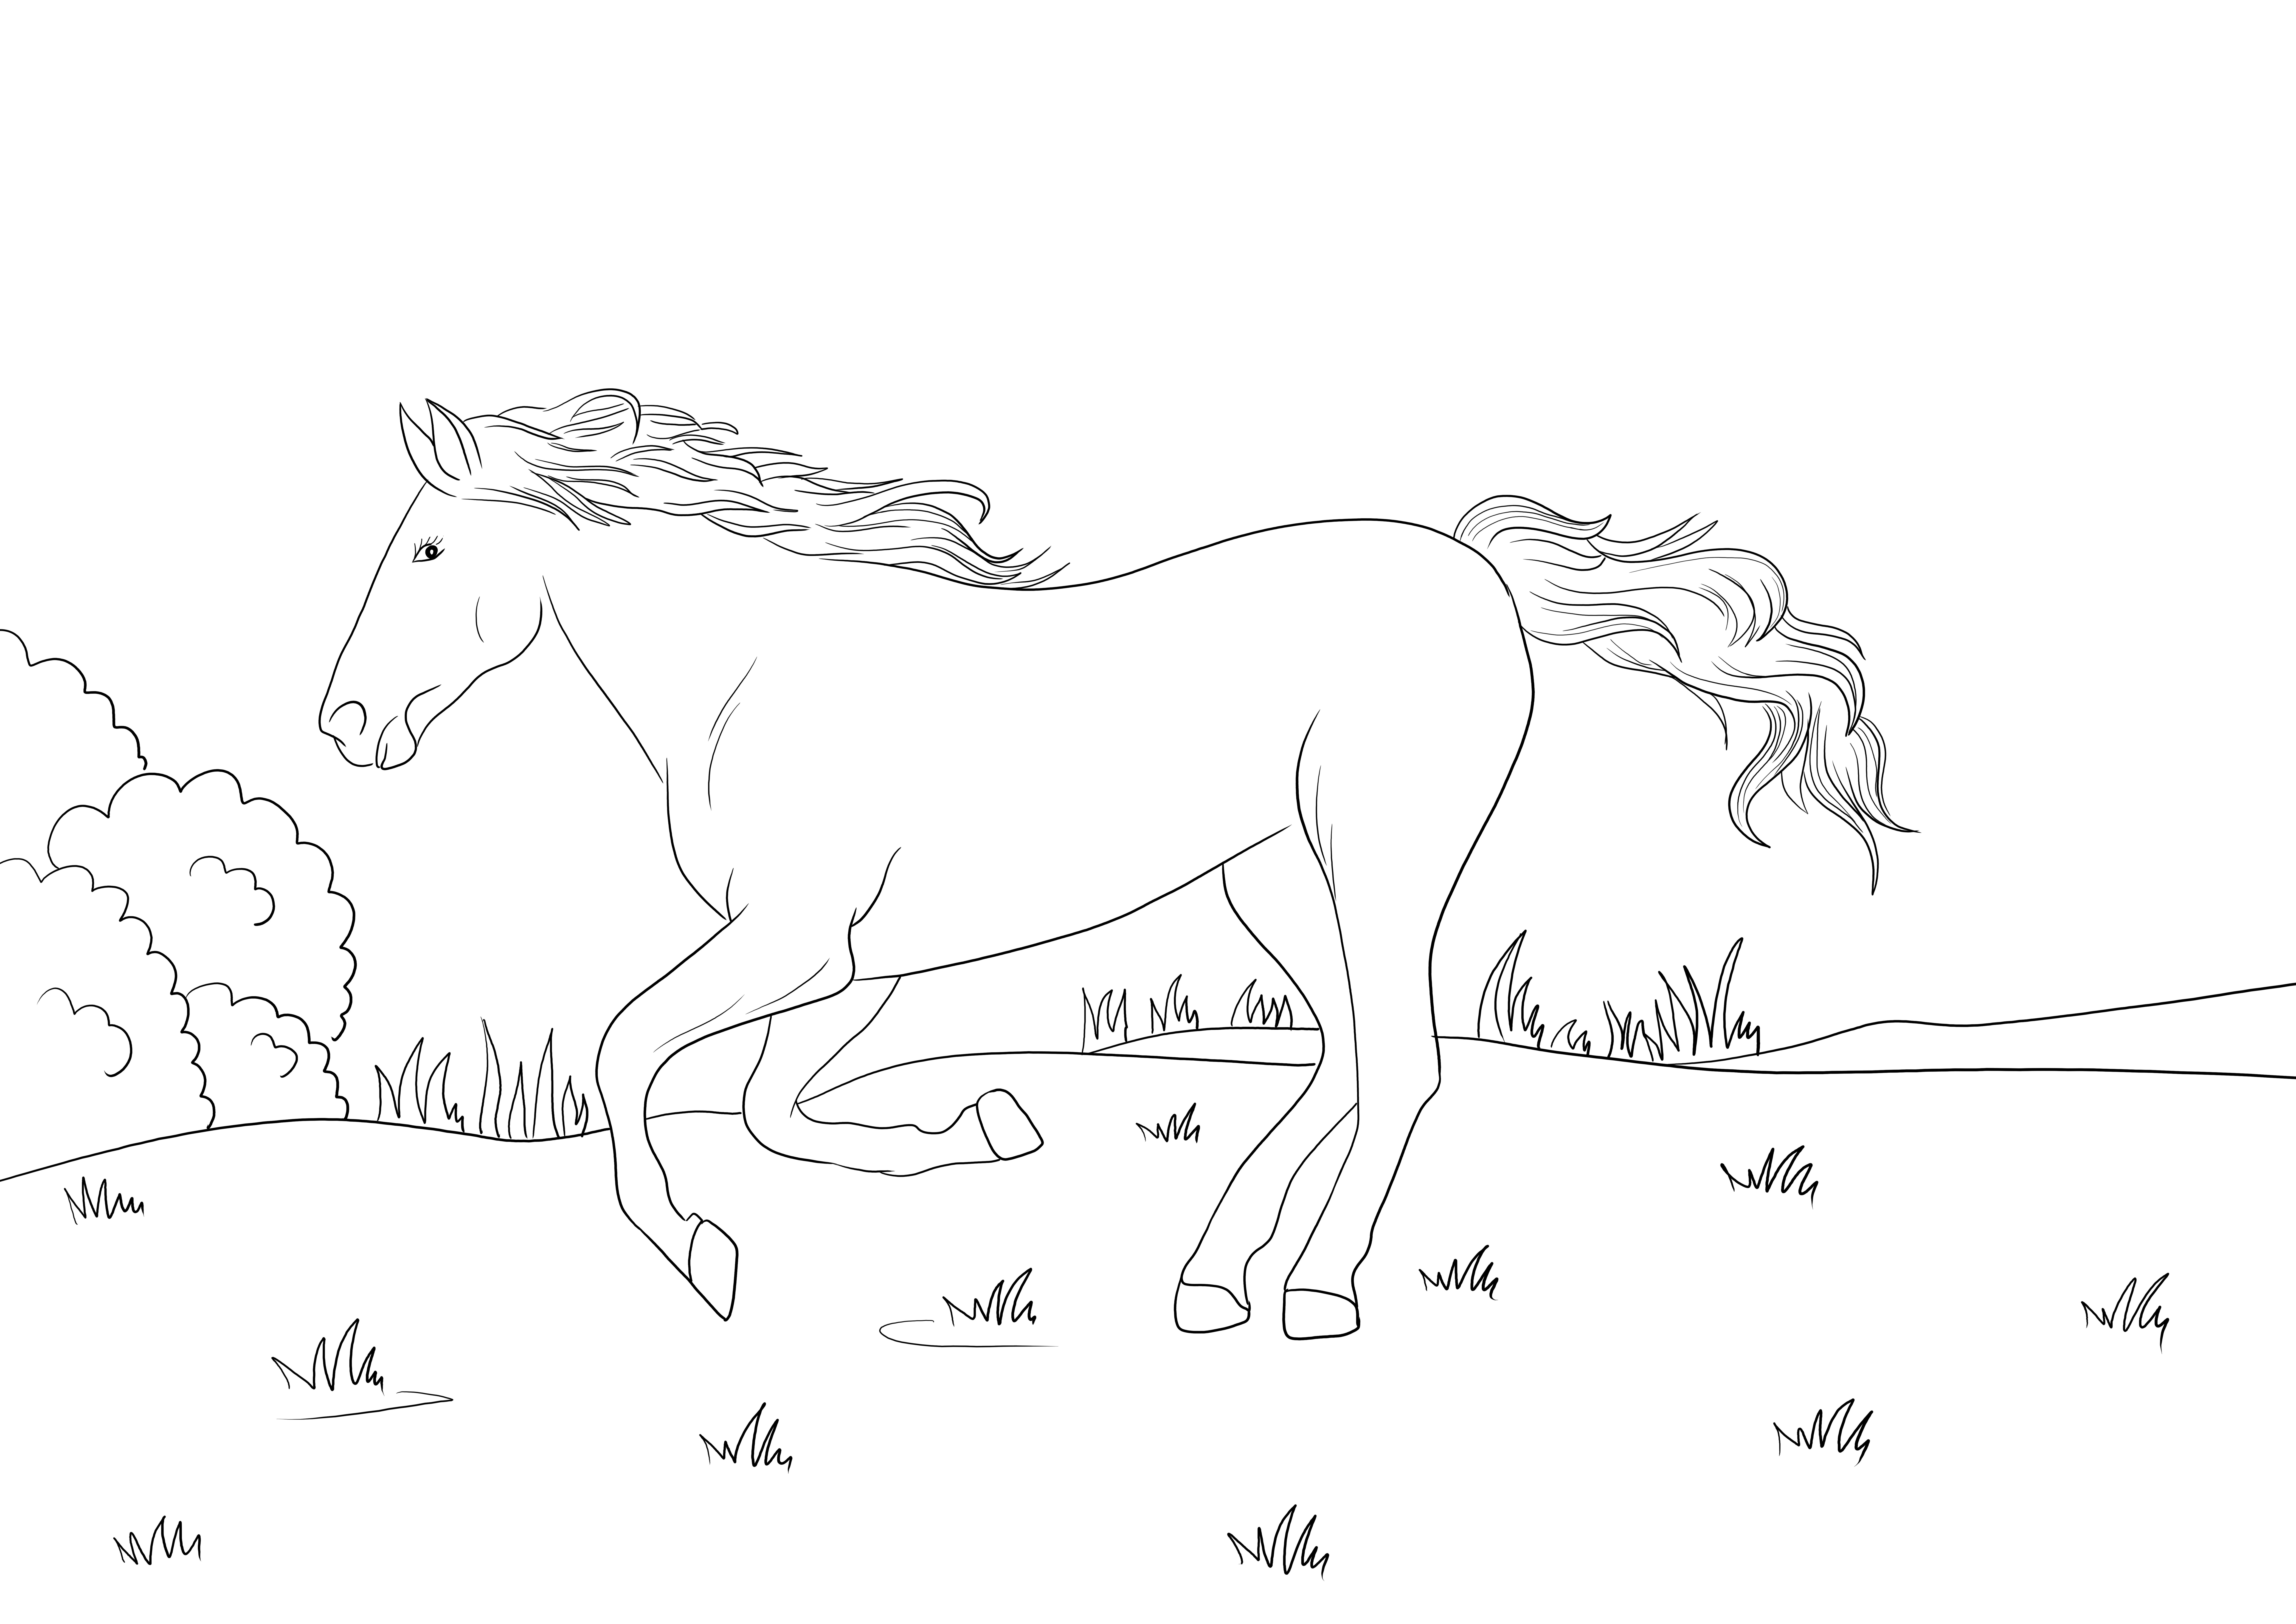 Cavalo Mustang relinchando impressão ou download grátis para crianças colorir